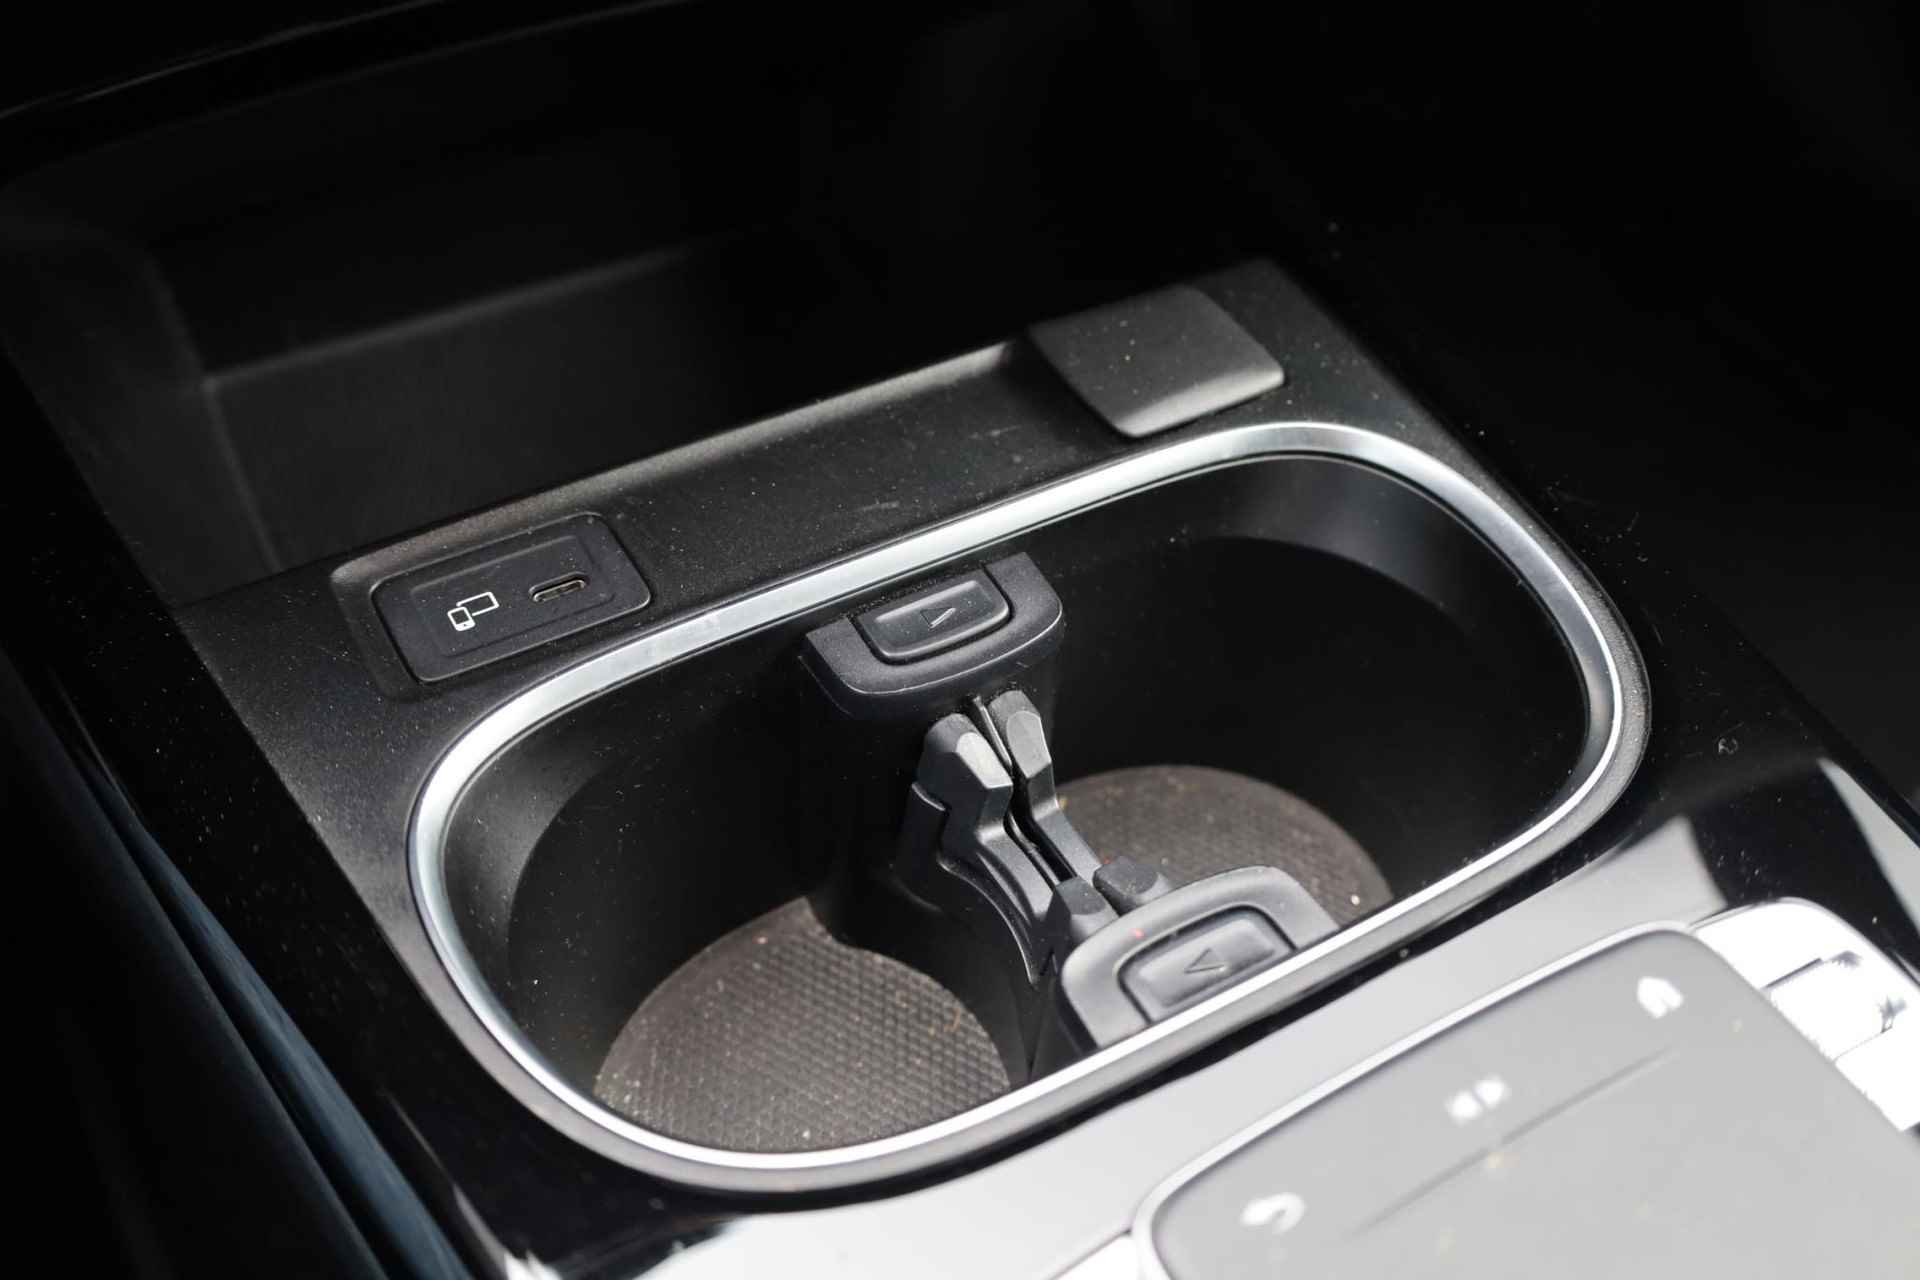 Mercedes-Benz A-klasse 200 Business Solution AMG 120KW/163PK automaat, Leder / alcantara, winterset LMV digitaal dashboard, navigatie, LED verlichting voor en achter, 18" LMV, stoelverwarming, parkeersensoren voor en achter, AMG bumpers - 33/44